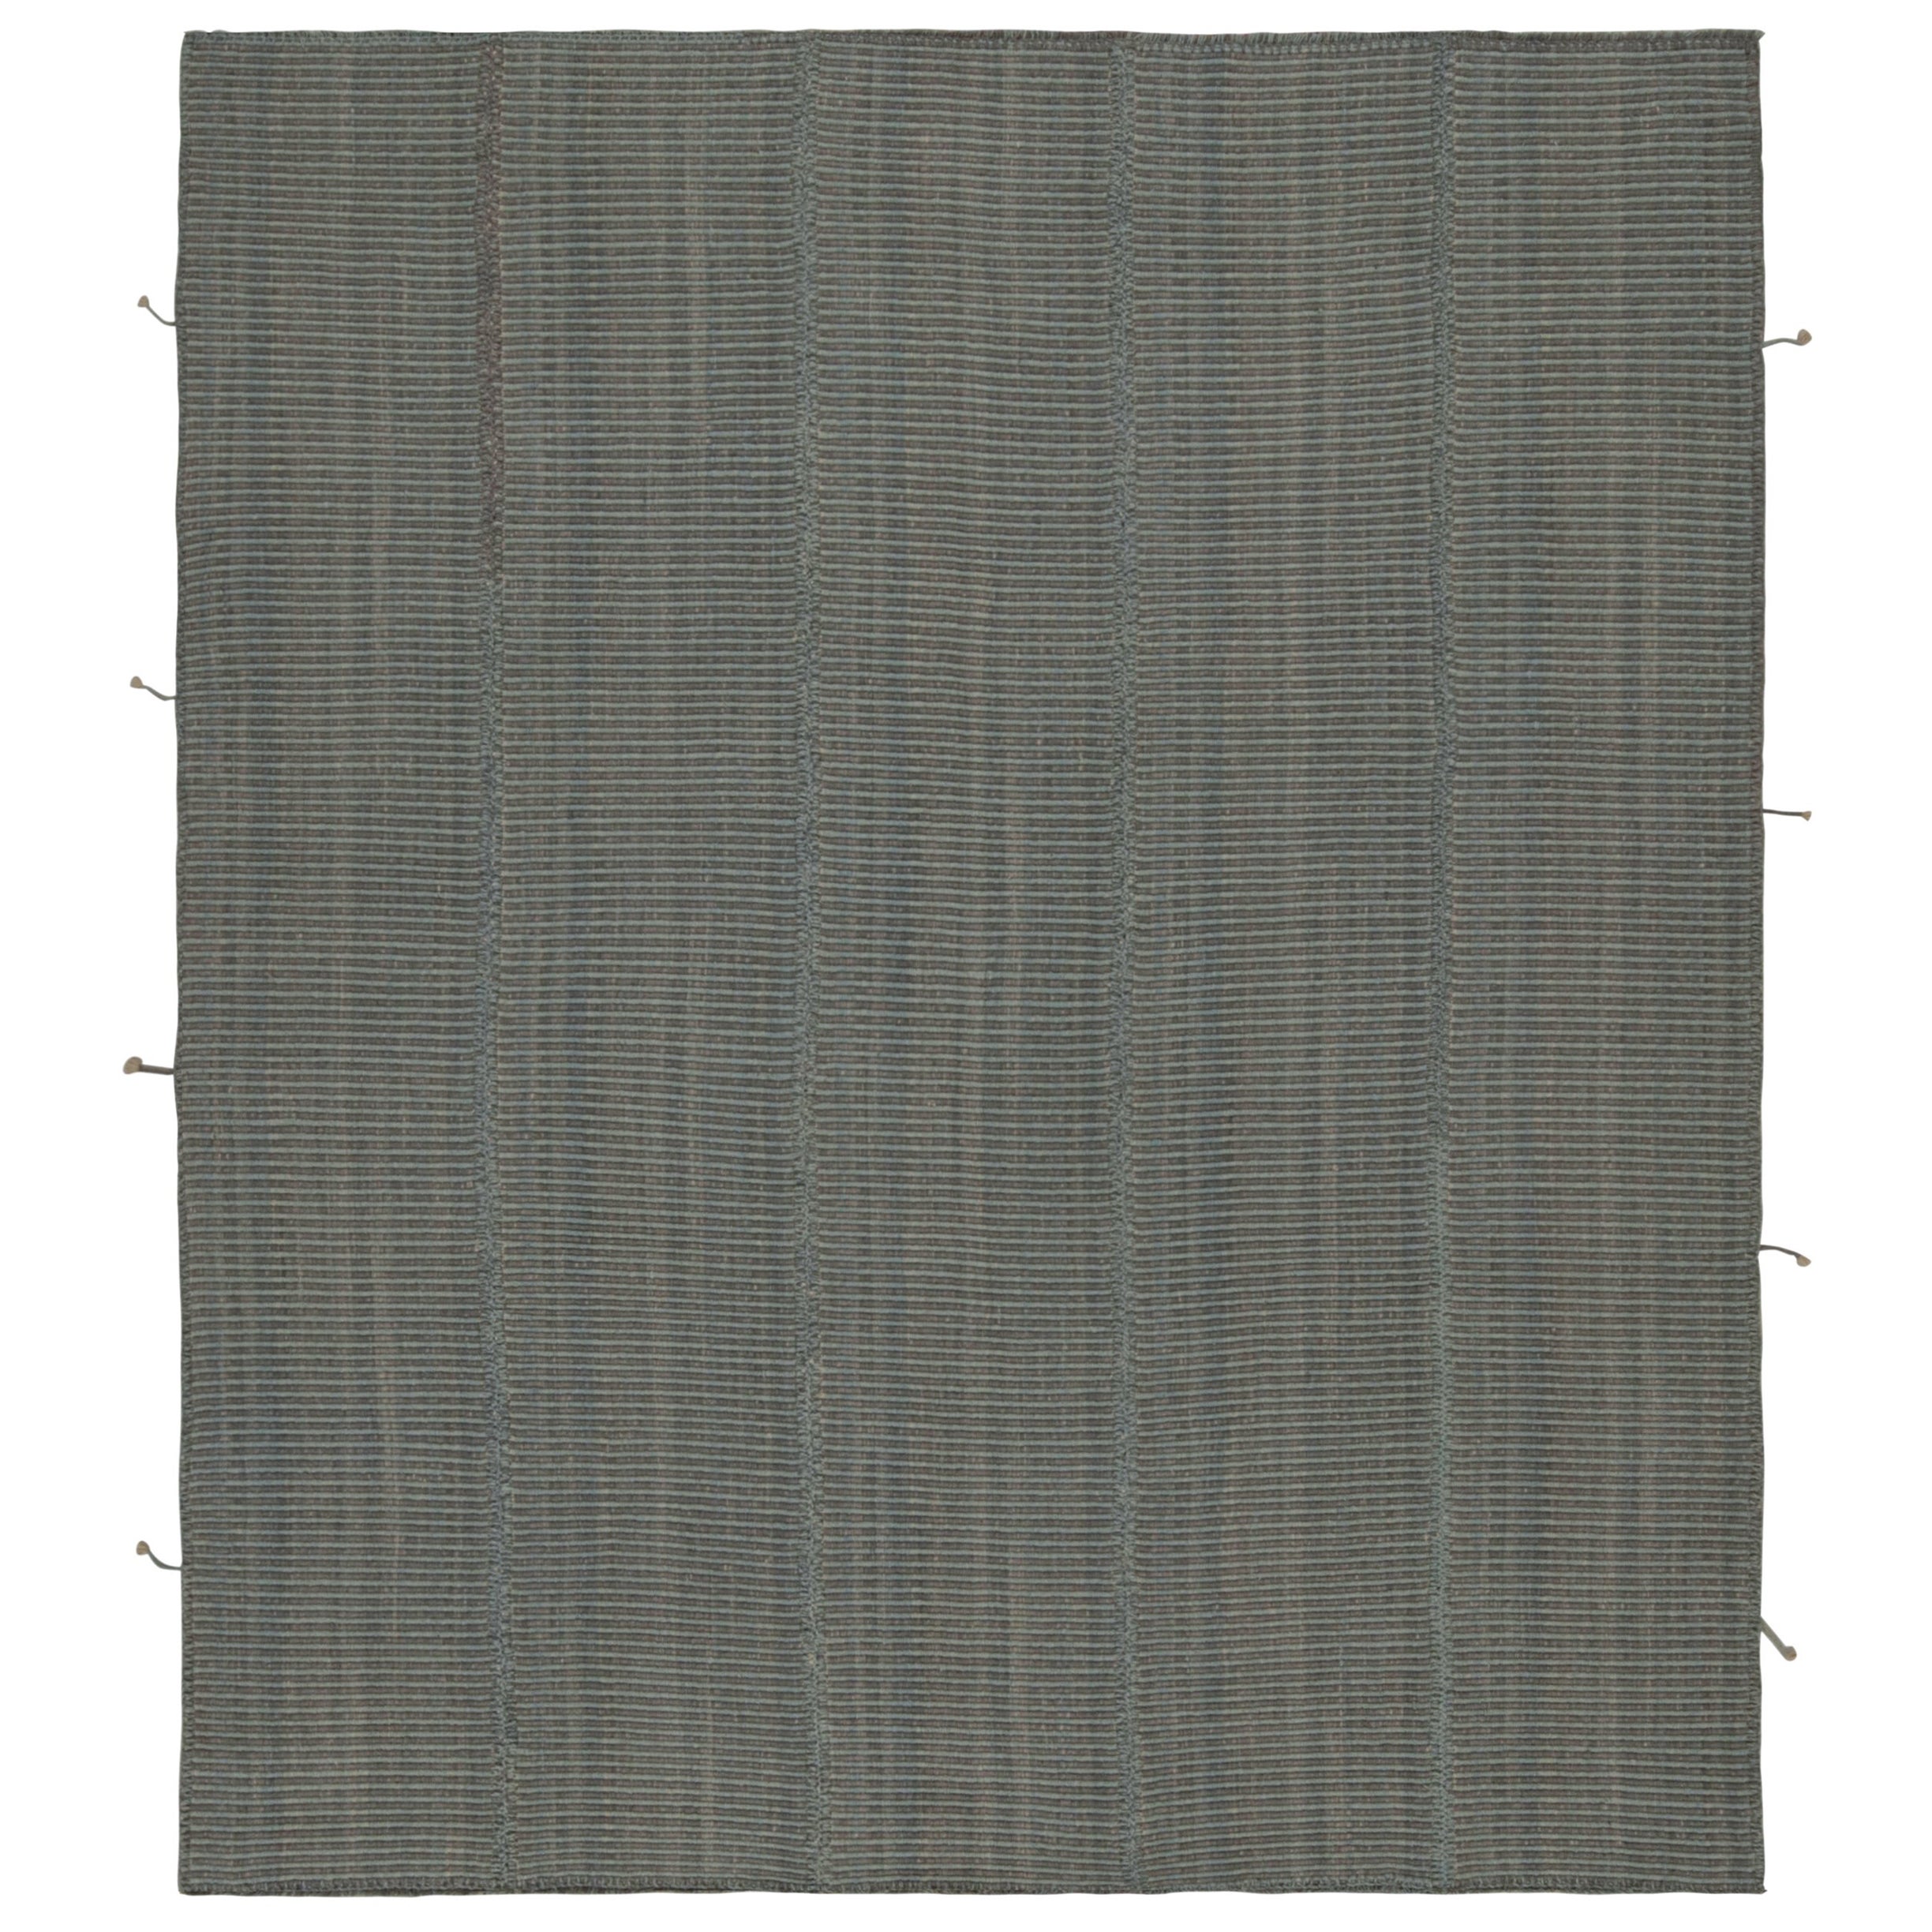 Rug & Kilim’s Modern Kilim in Gray & Blue Stripes For Sale